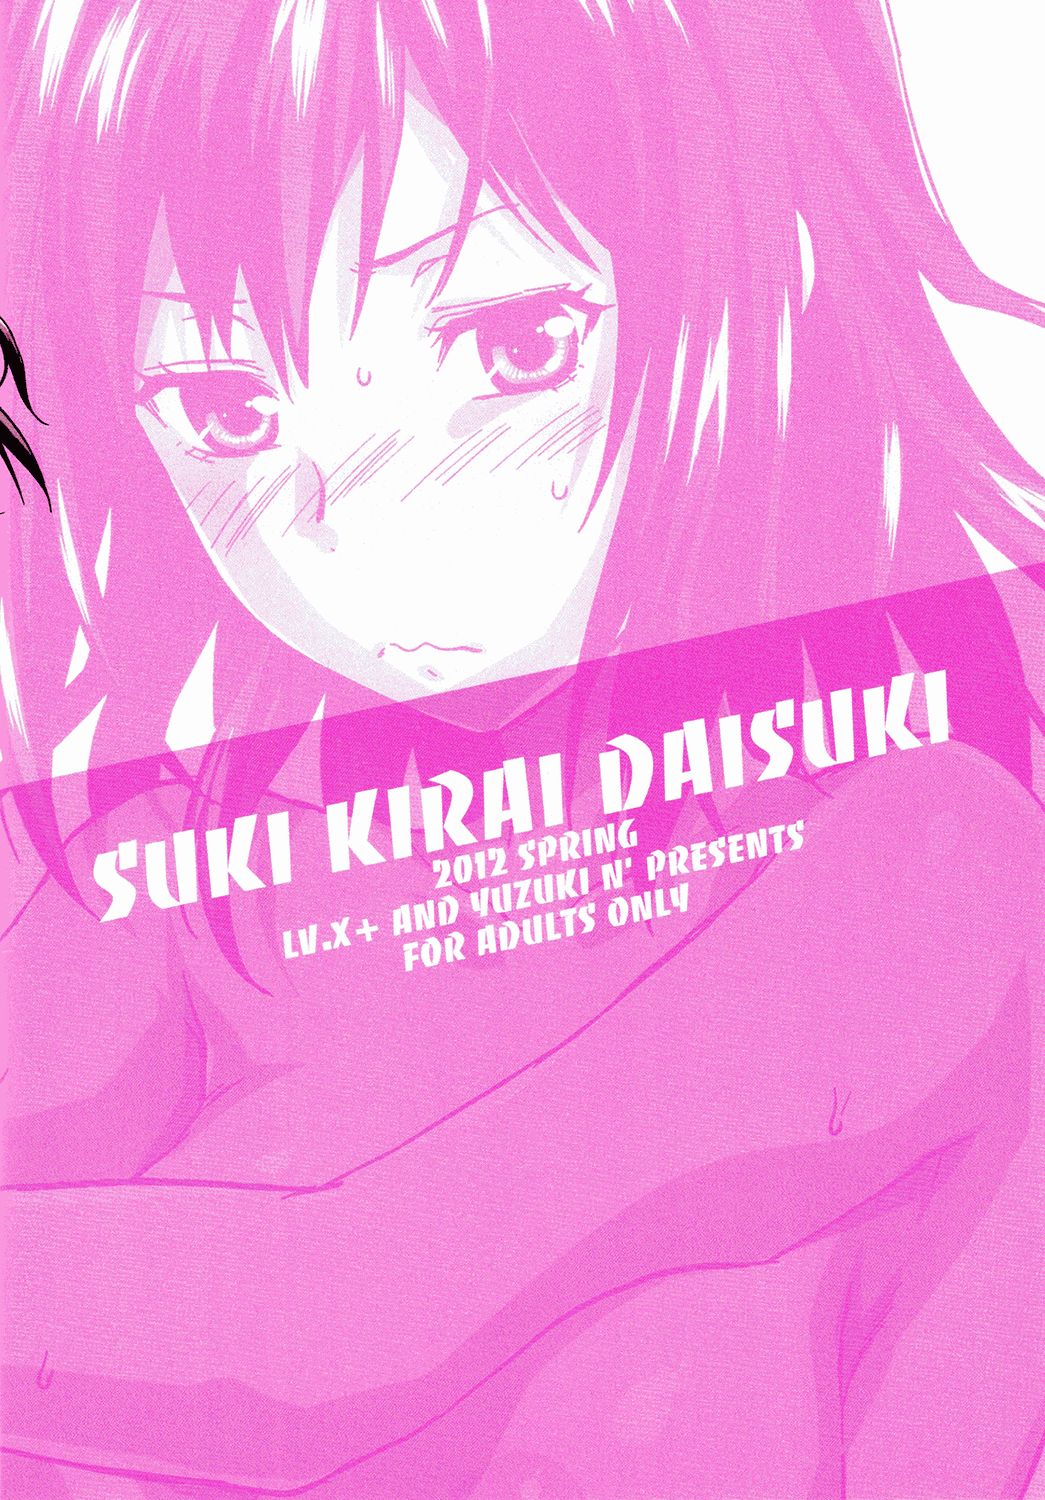 (COMIC1☆6)[Lv.X+ (Yuzuki N Dash)] Suki • Kirai • Daisuki Bangaihen (COMIC1☆6)[Lv.X+ (柚木N')]スキ・キライ・ダイスキ。番外編